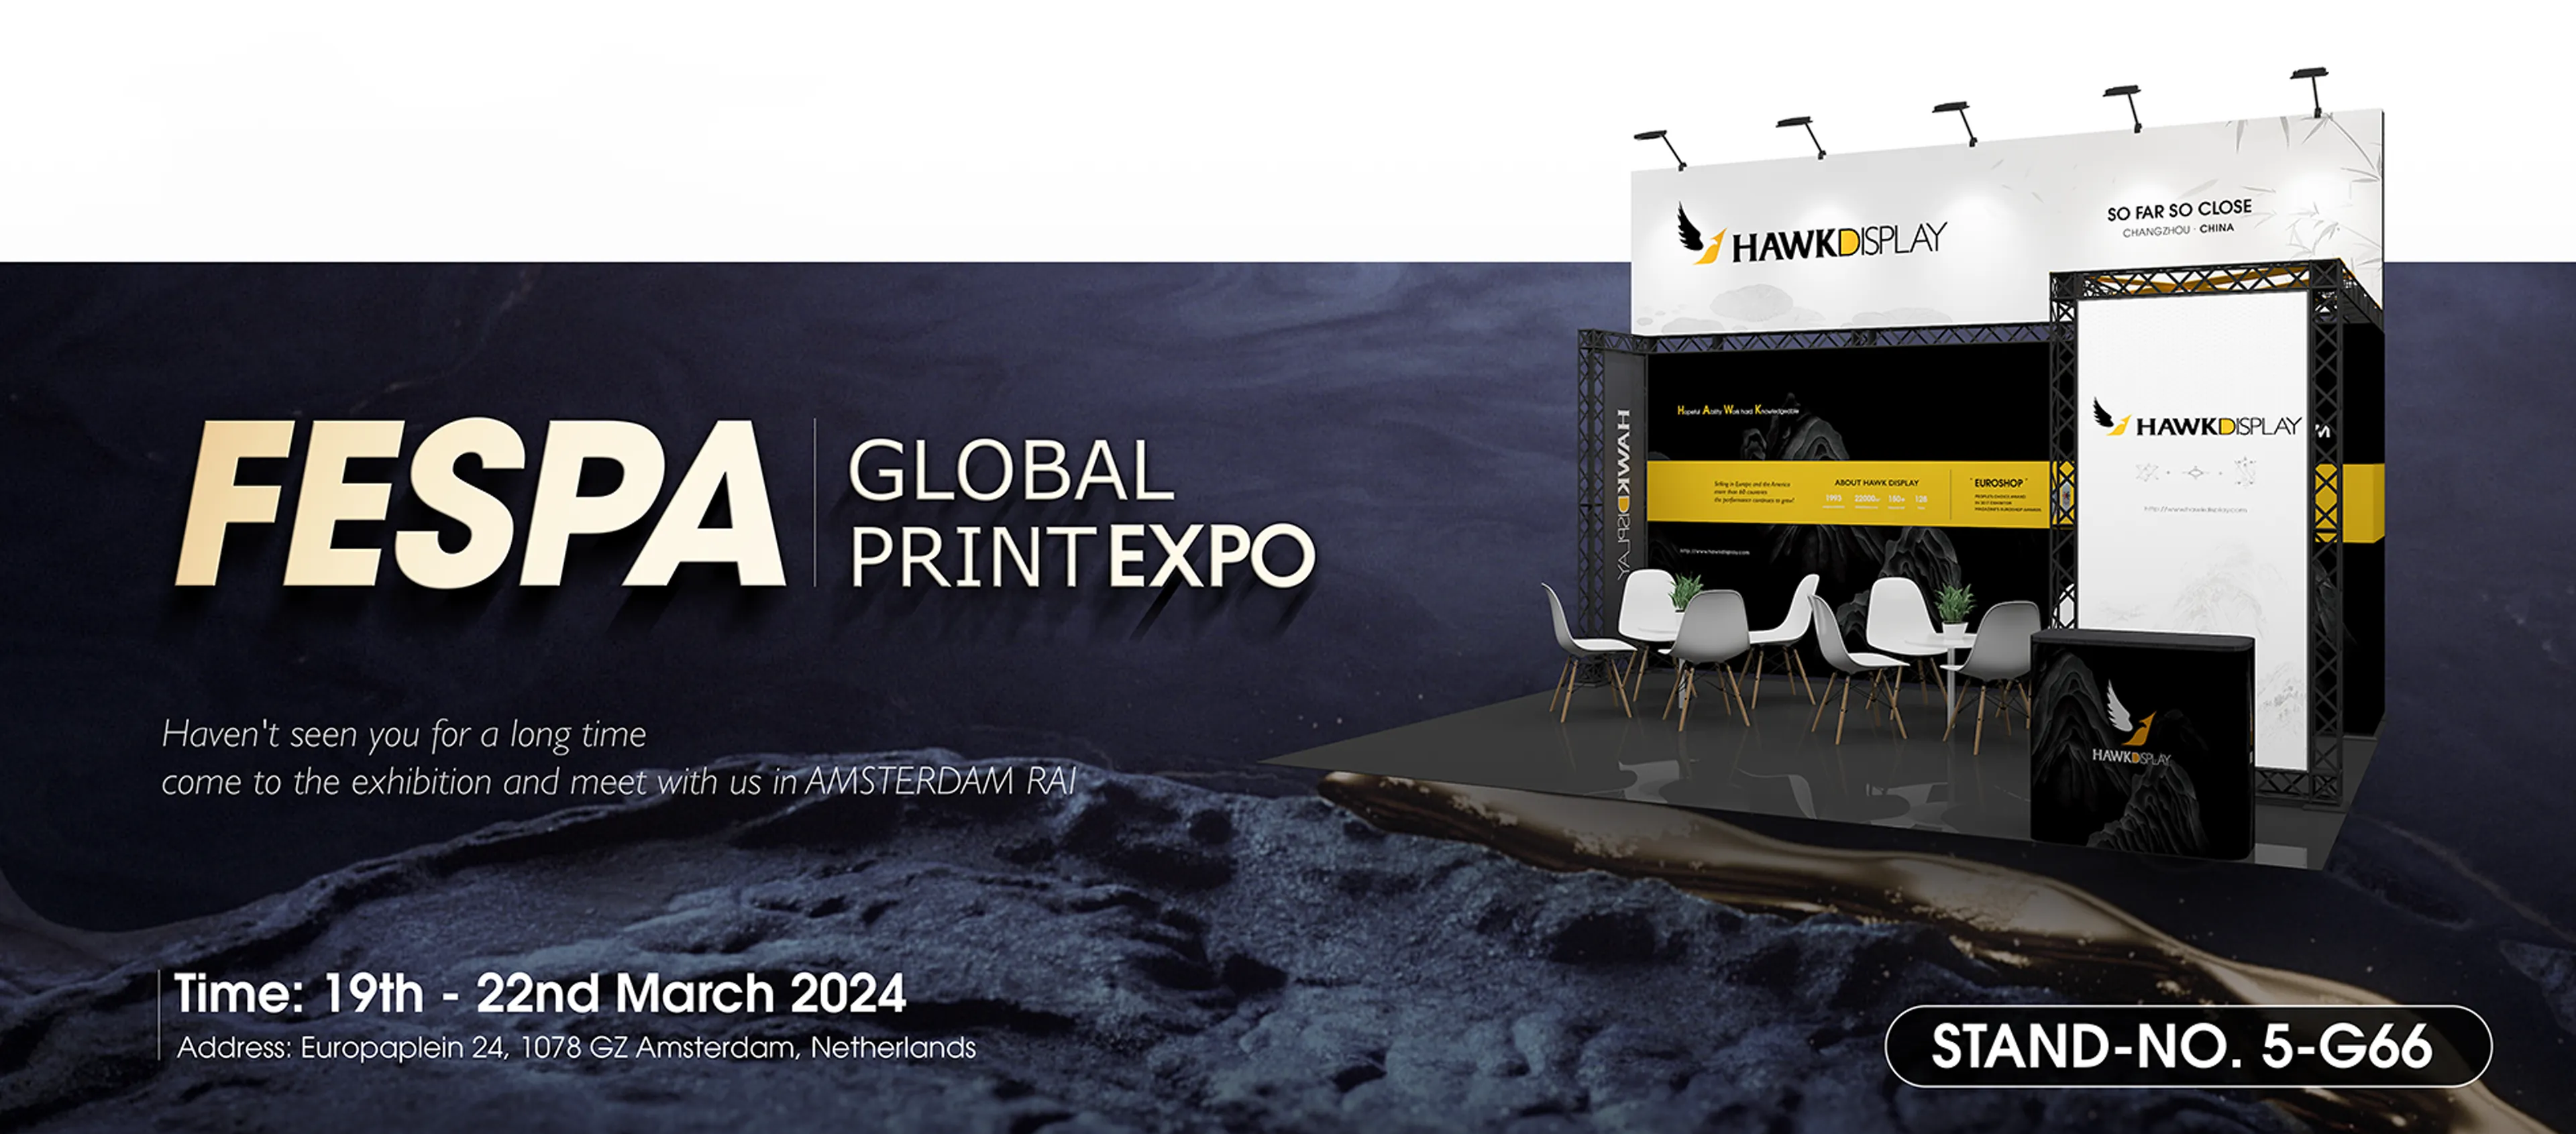 Fespa Global Print Expo 2024